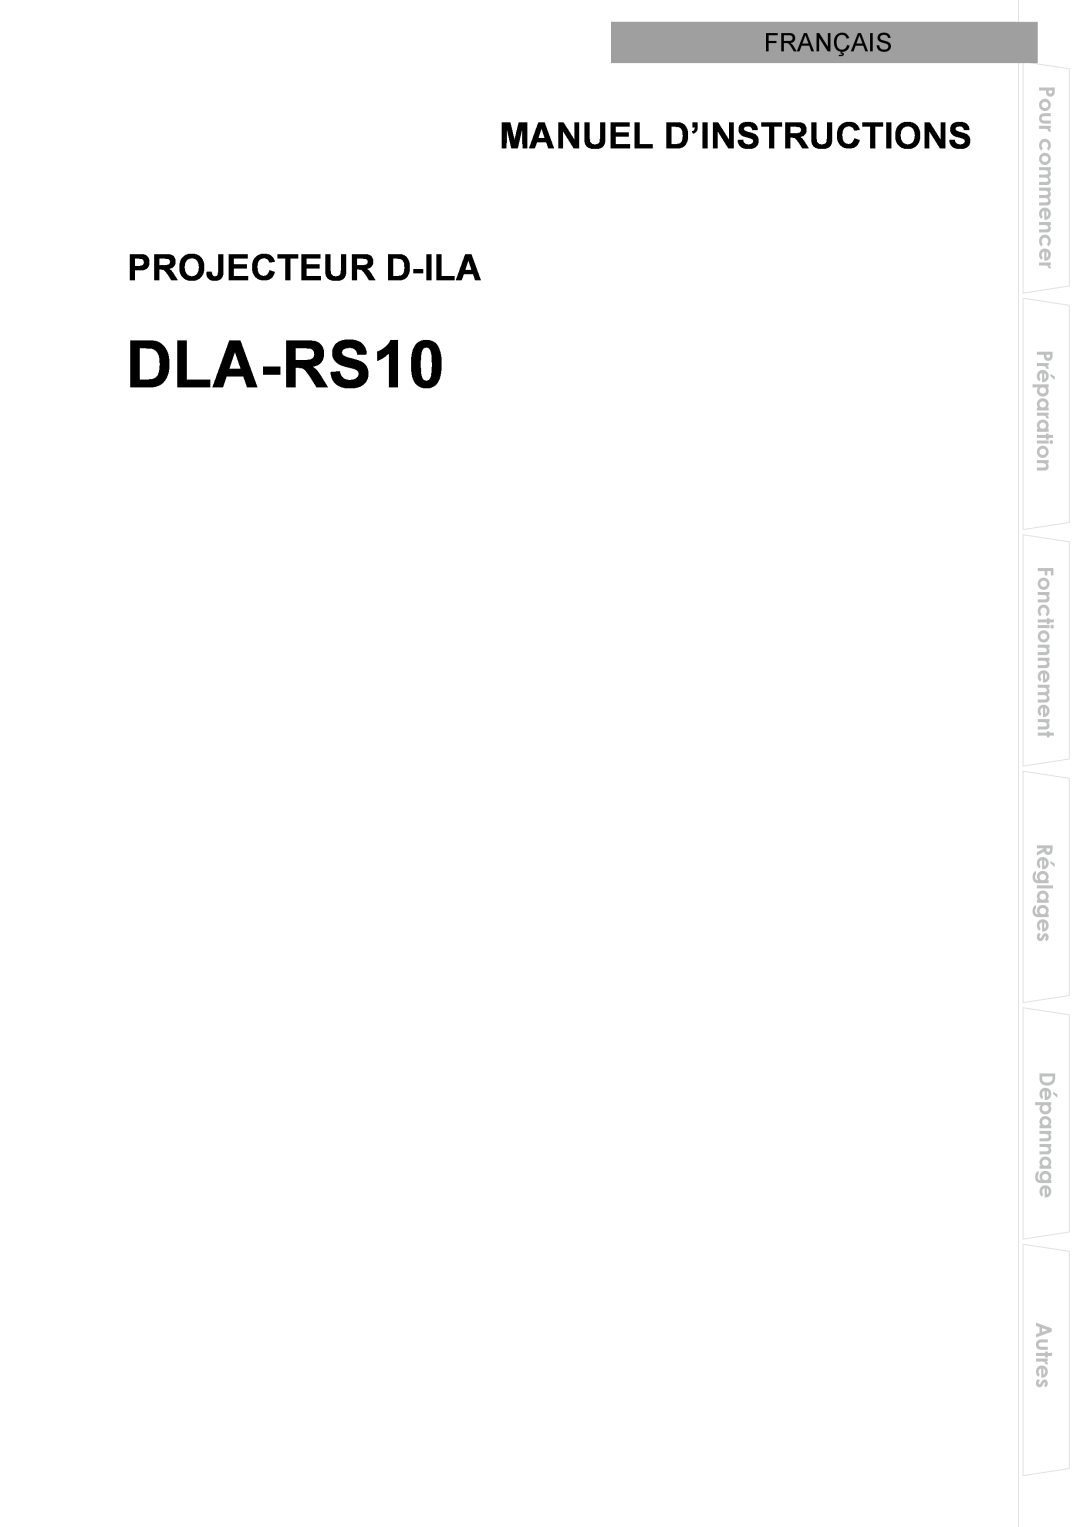 JVC DLA-RS10 manual Manuel D’Instructions Projecteur D-Ila, Français 